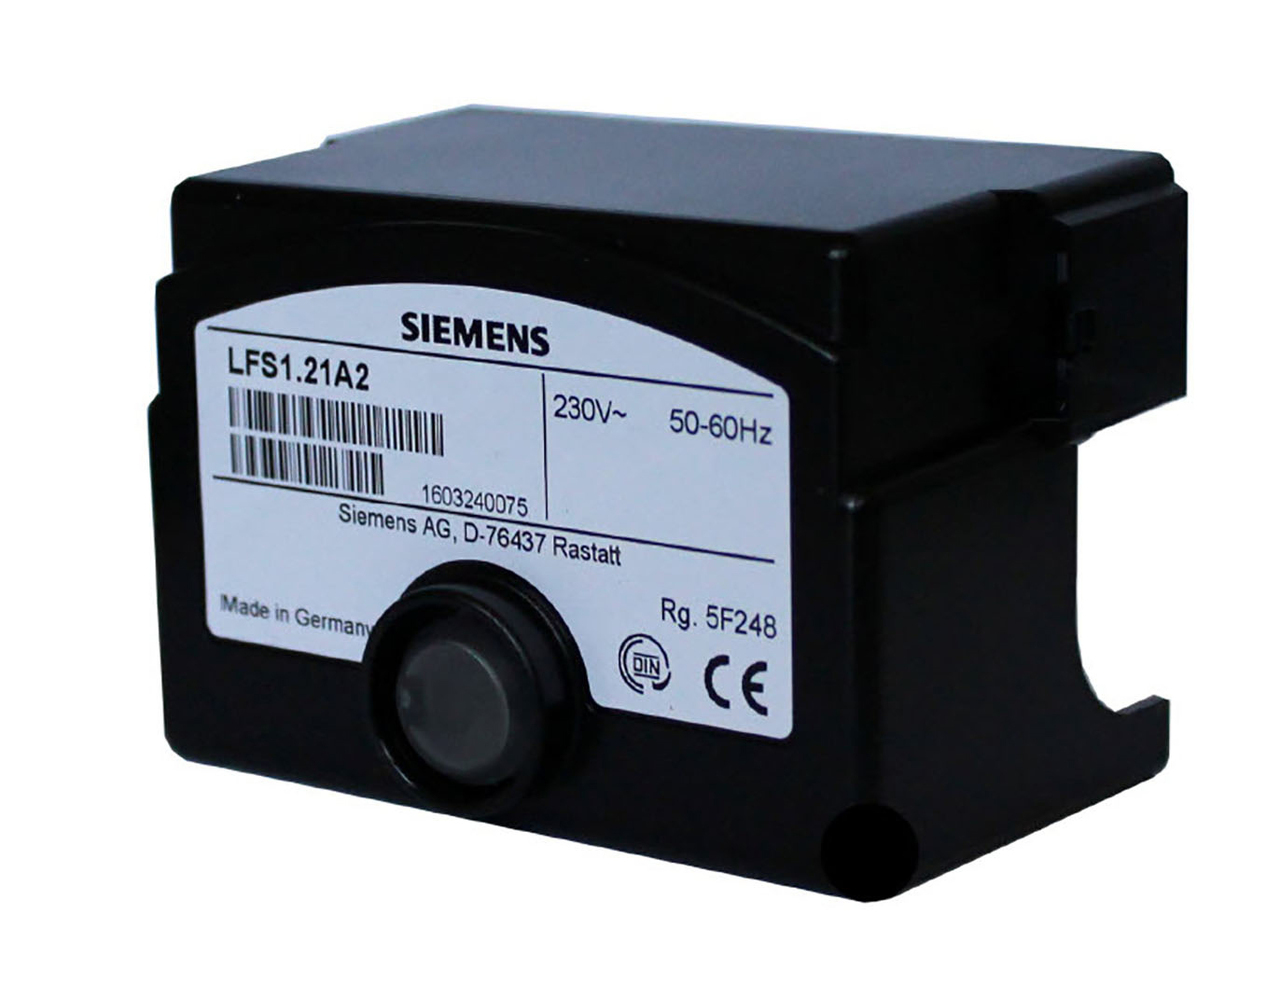 Controlador LFS1.21A2 / LFS1.21A1 Siemens 